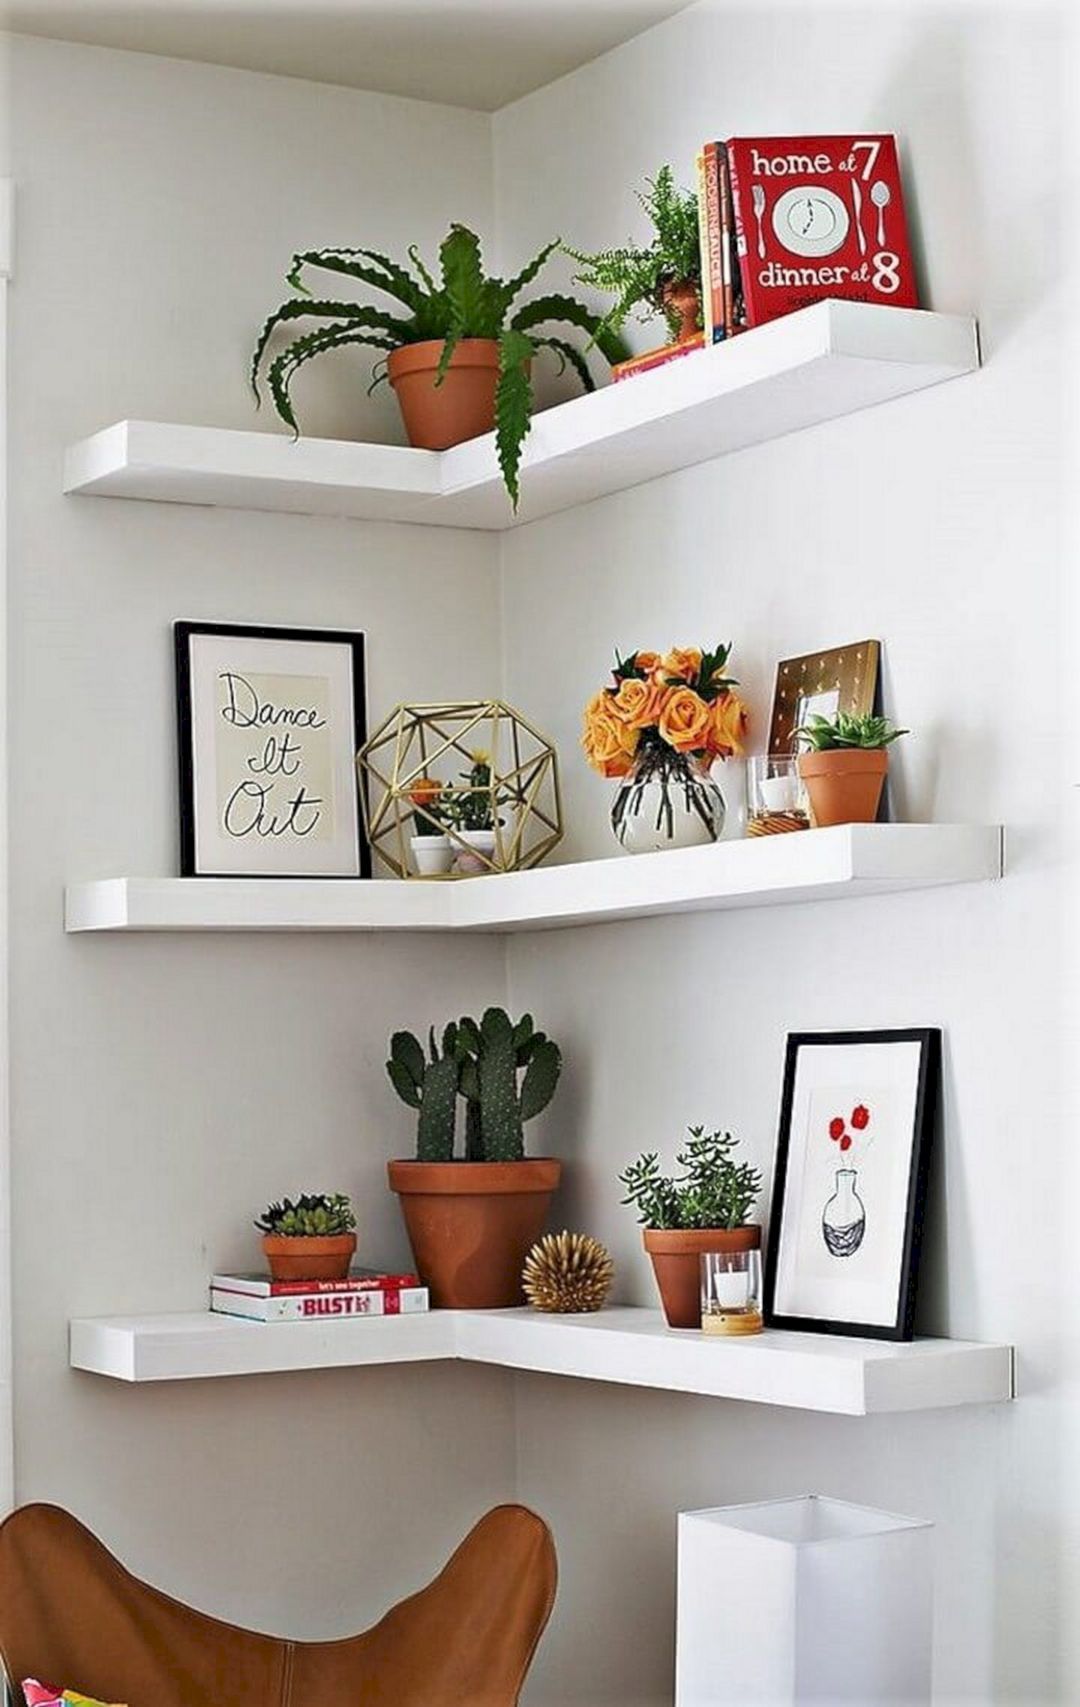 Top 12 DIY Corner Shelves Design For Best Home Decoration Ideas - Top 12 DIY Corner Shelves Design For Best Home Decoration Ideas -   16 diy Shelves white ideas